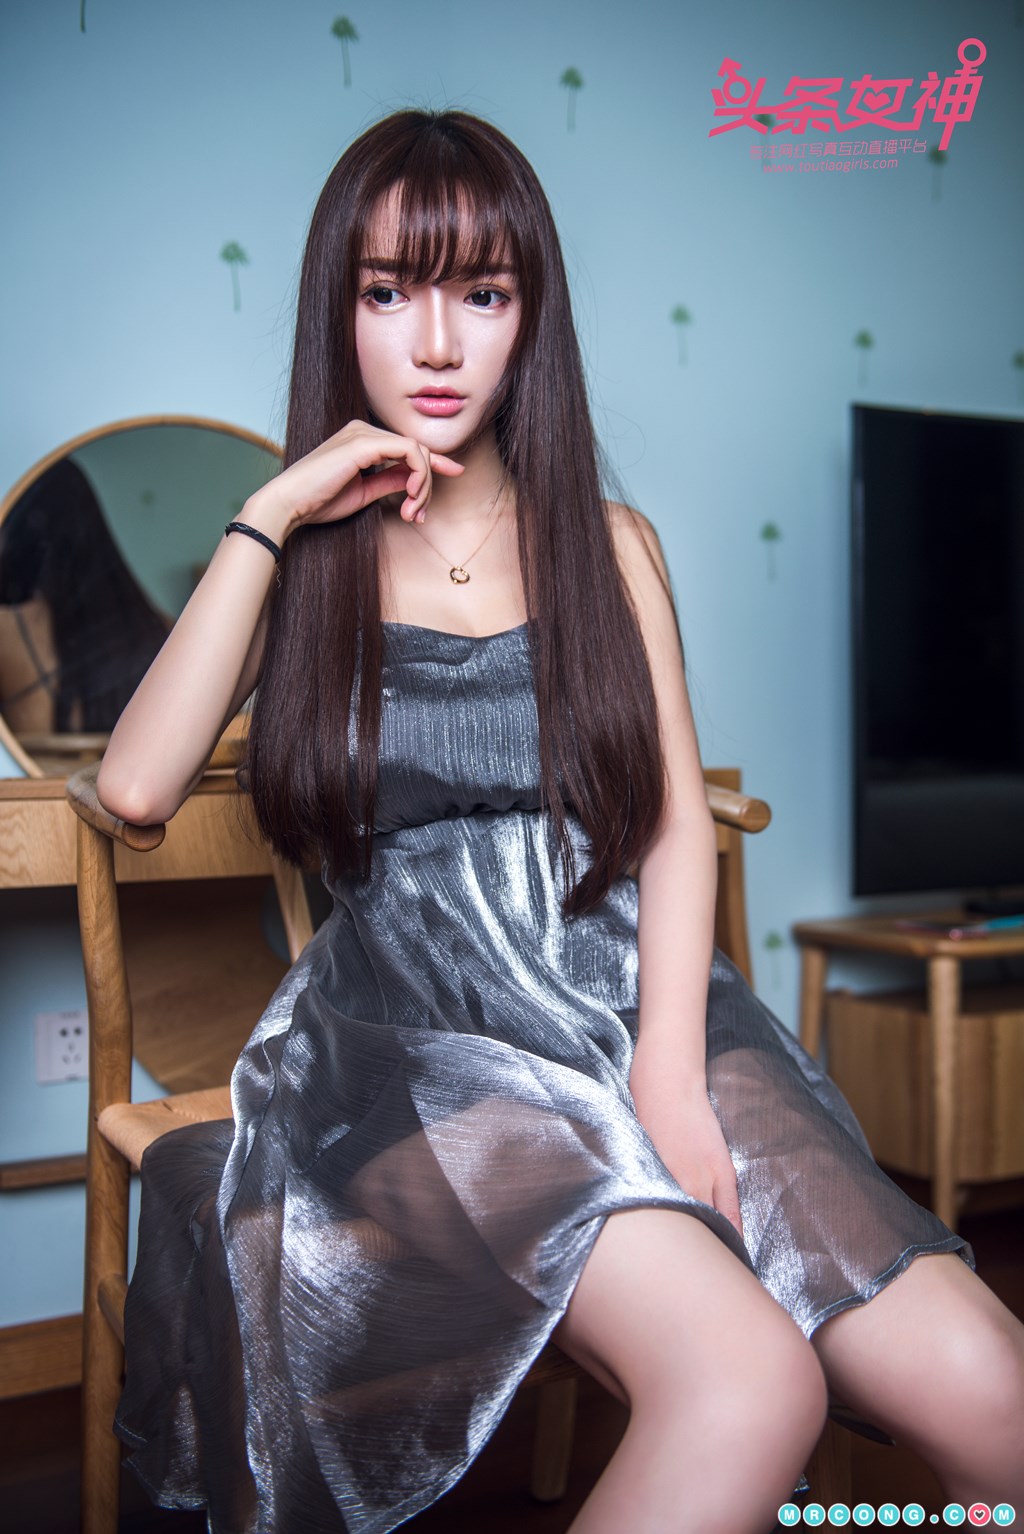 TouTiao 2017-09-20: Model Xiao Ru Jing (小 如 镜) (25 photos)